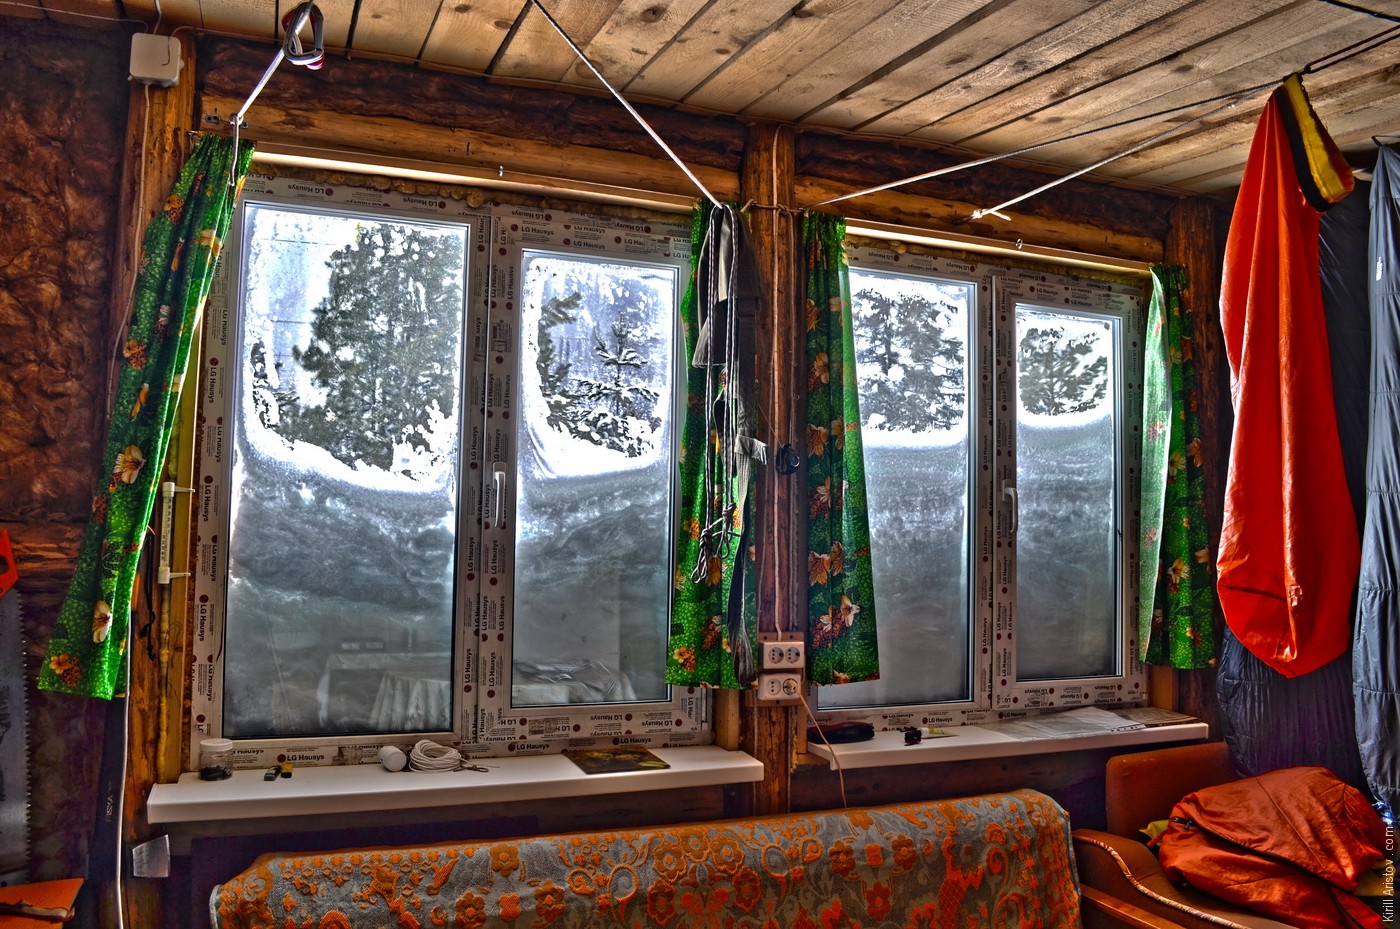 После очередного снегопада окна замело наполовину, Location: Село Балыкса, Аскизский район, Республика Хакасия, Россия.